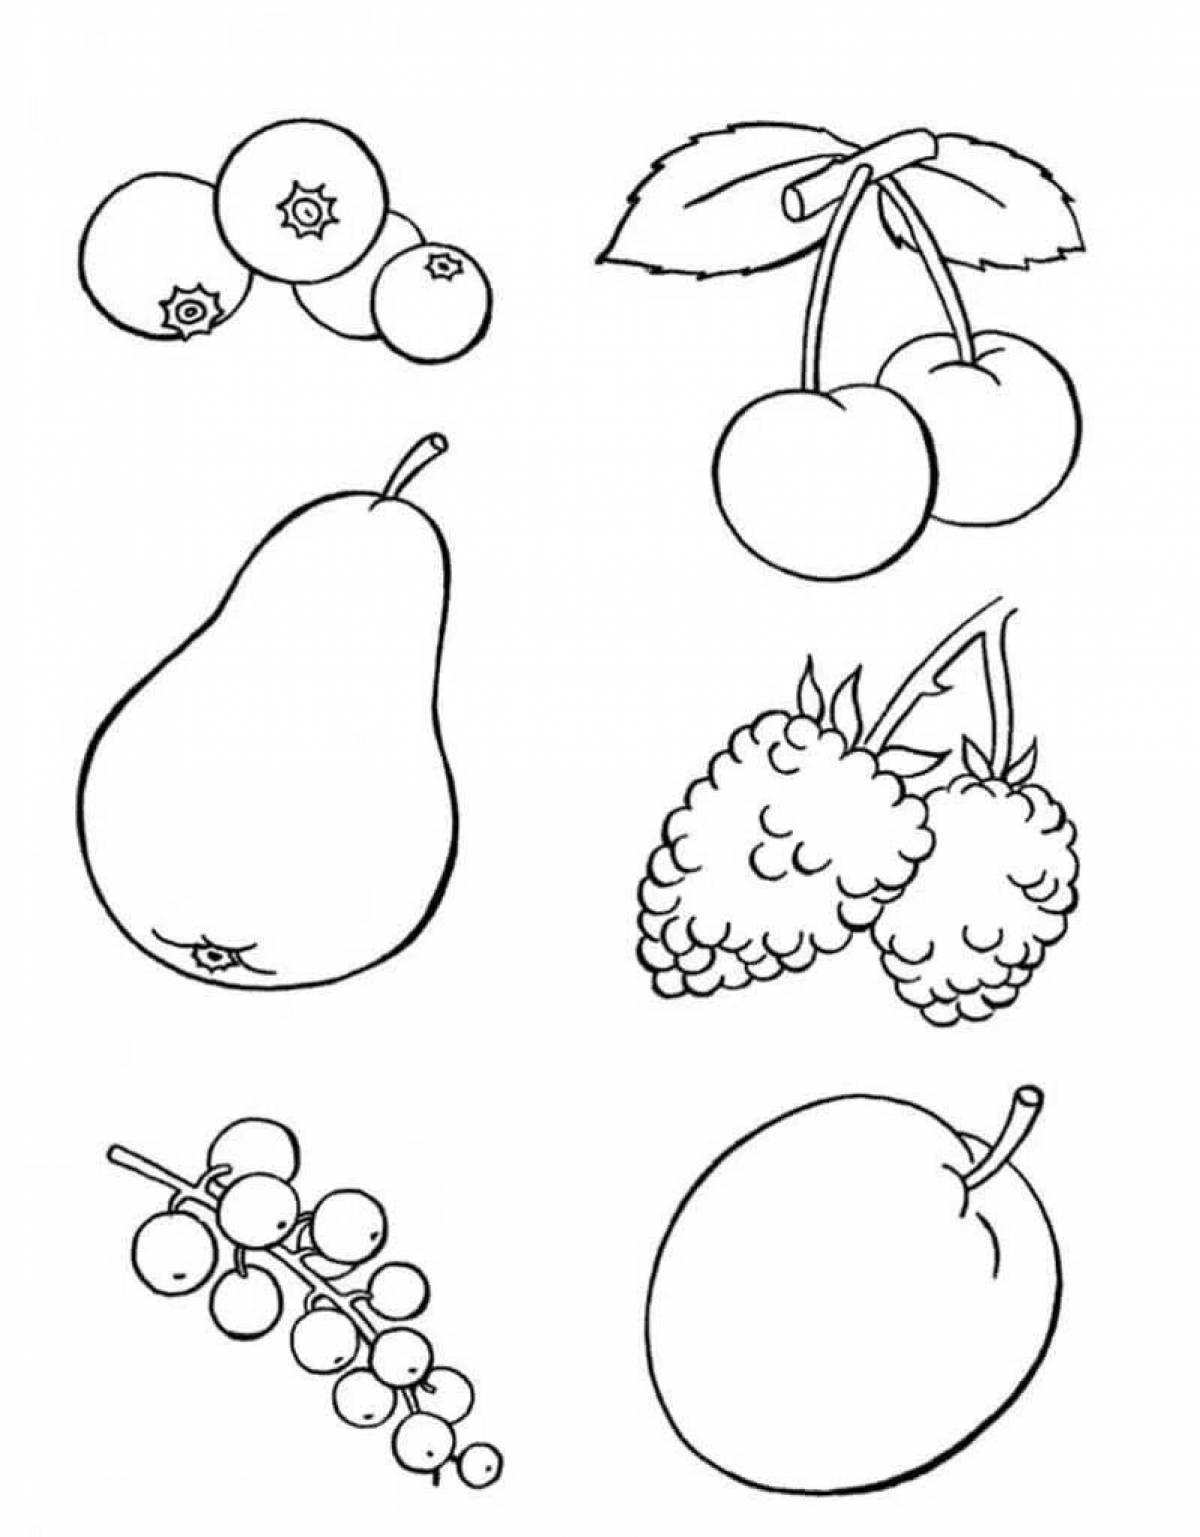 Раскраска с волшебными фруктами для детей 5-6 лет